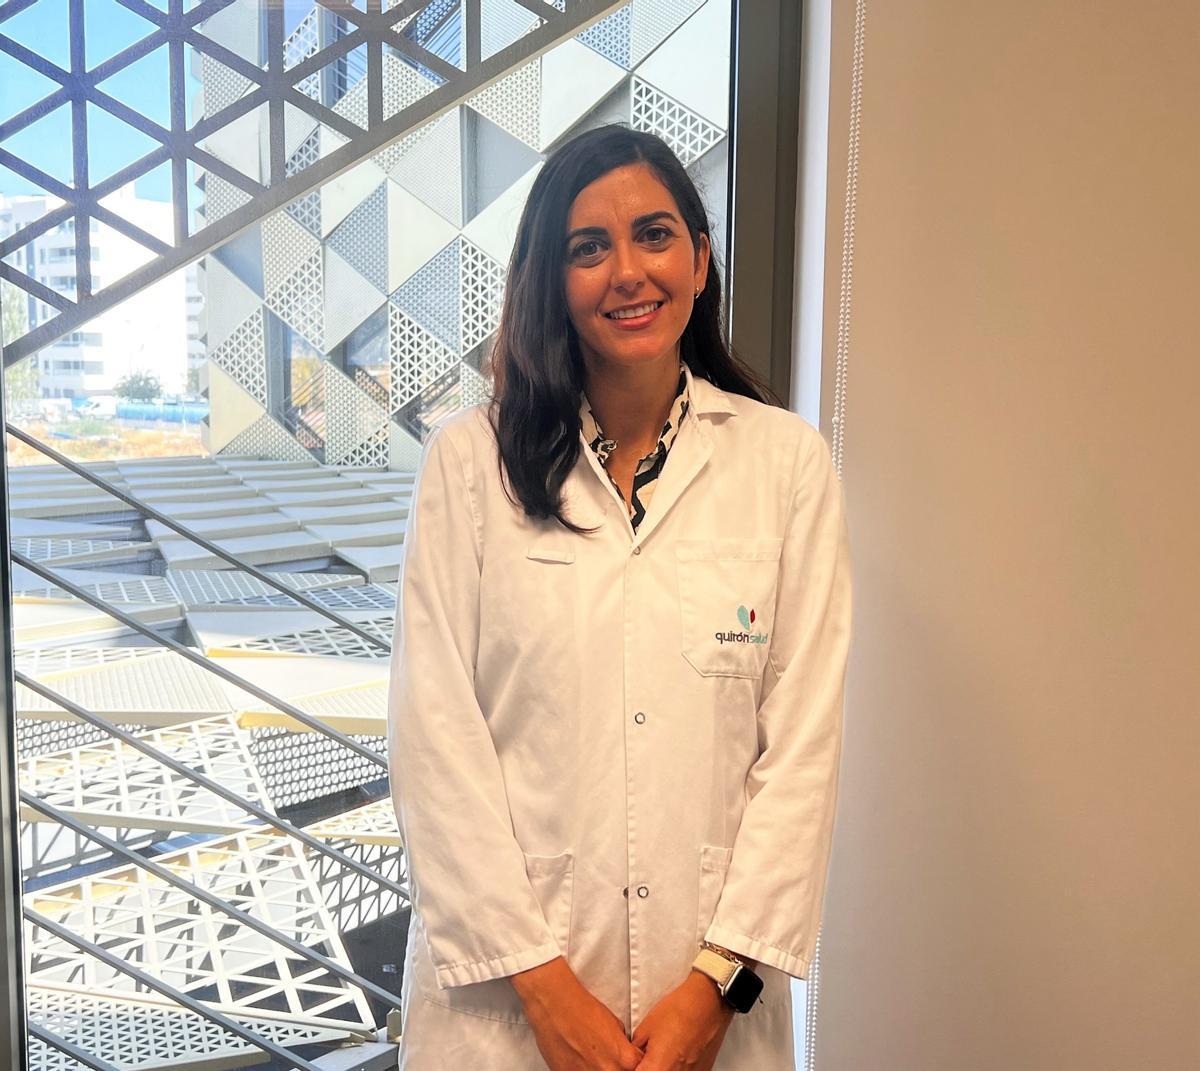 La especialista en Endocrinología y Nutrición Carmen Serrano, del hospital QuirónSalud Córdoba.